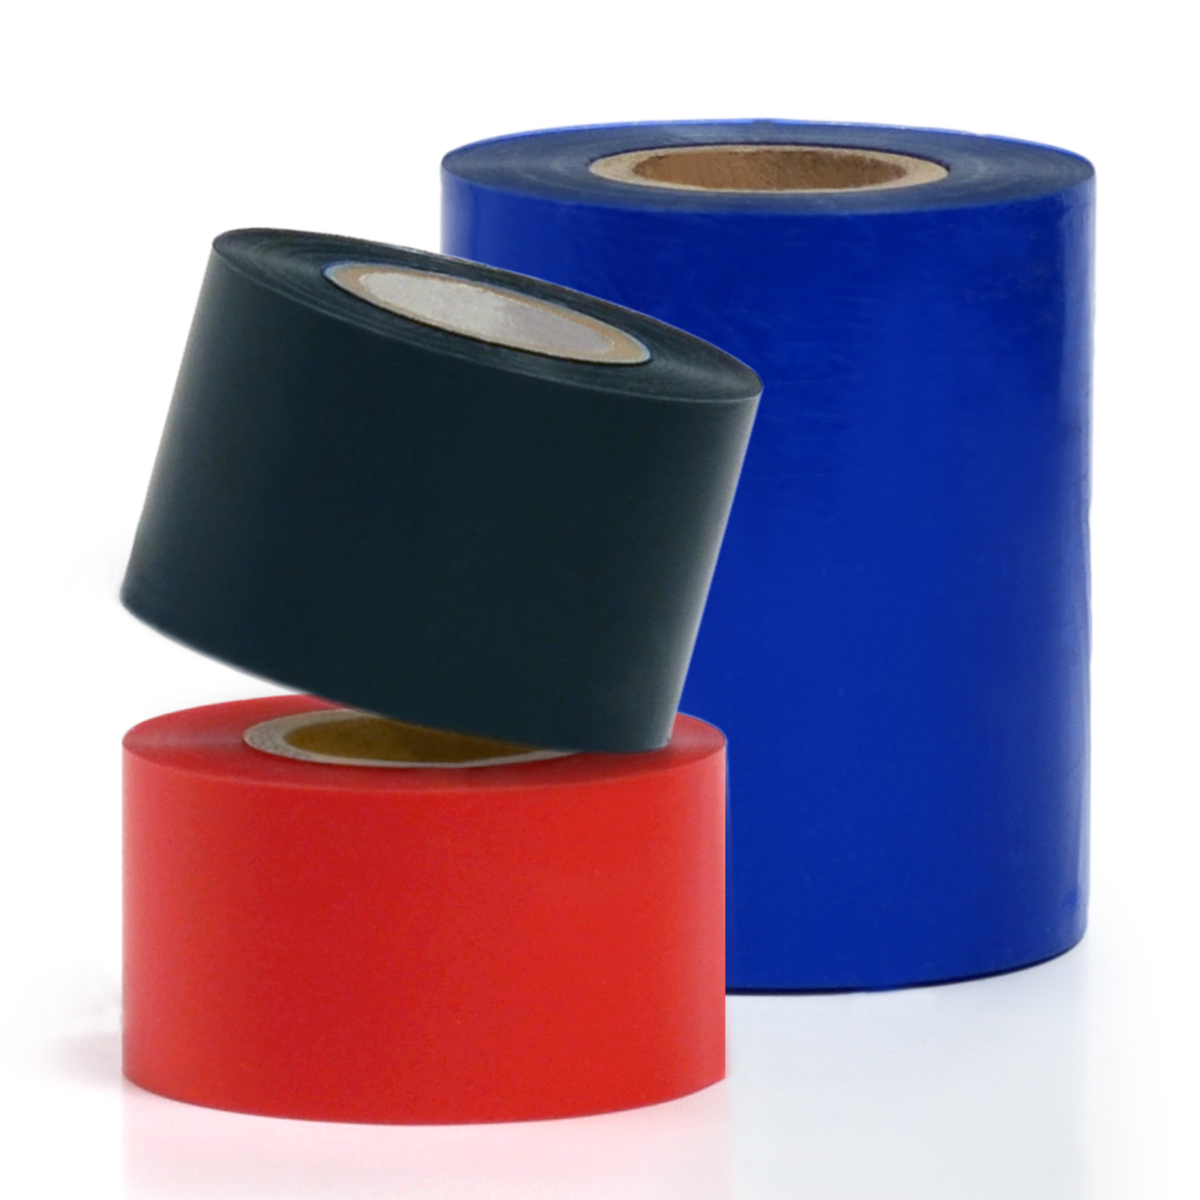 Thermal transfer resin ribbons for label printers